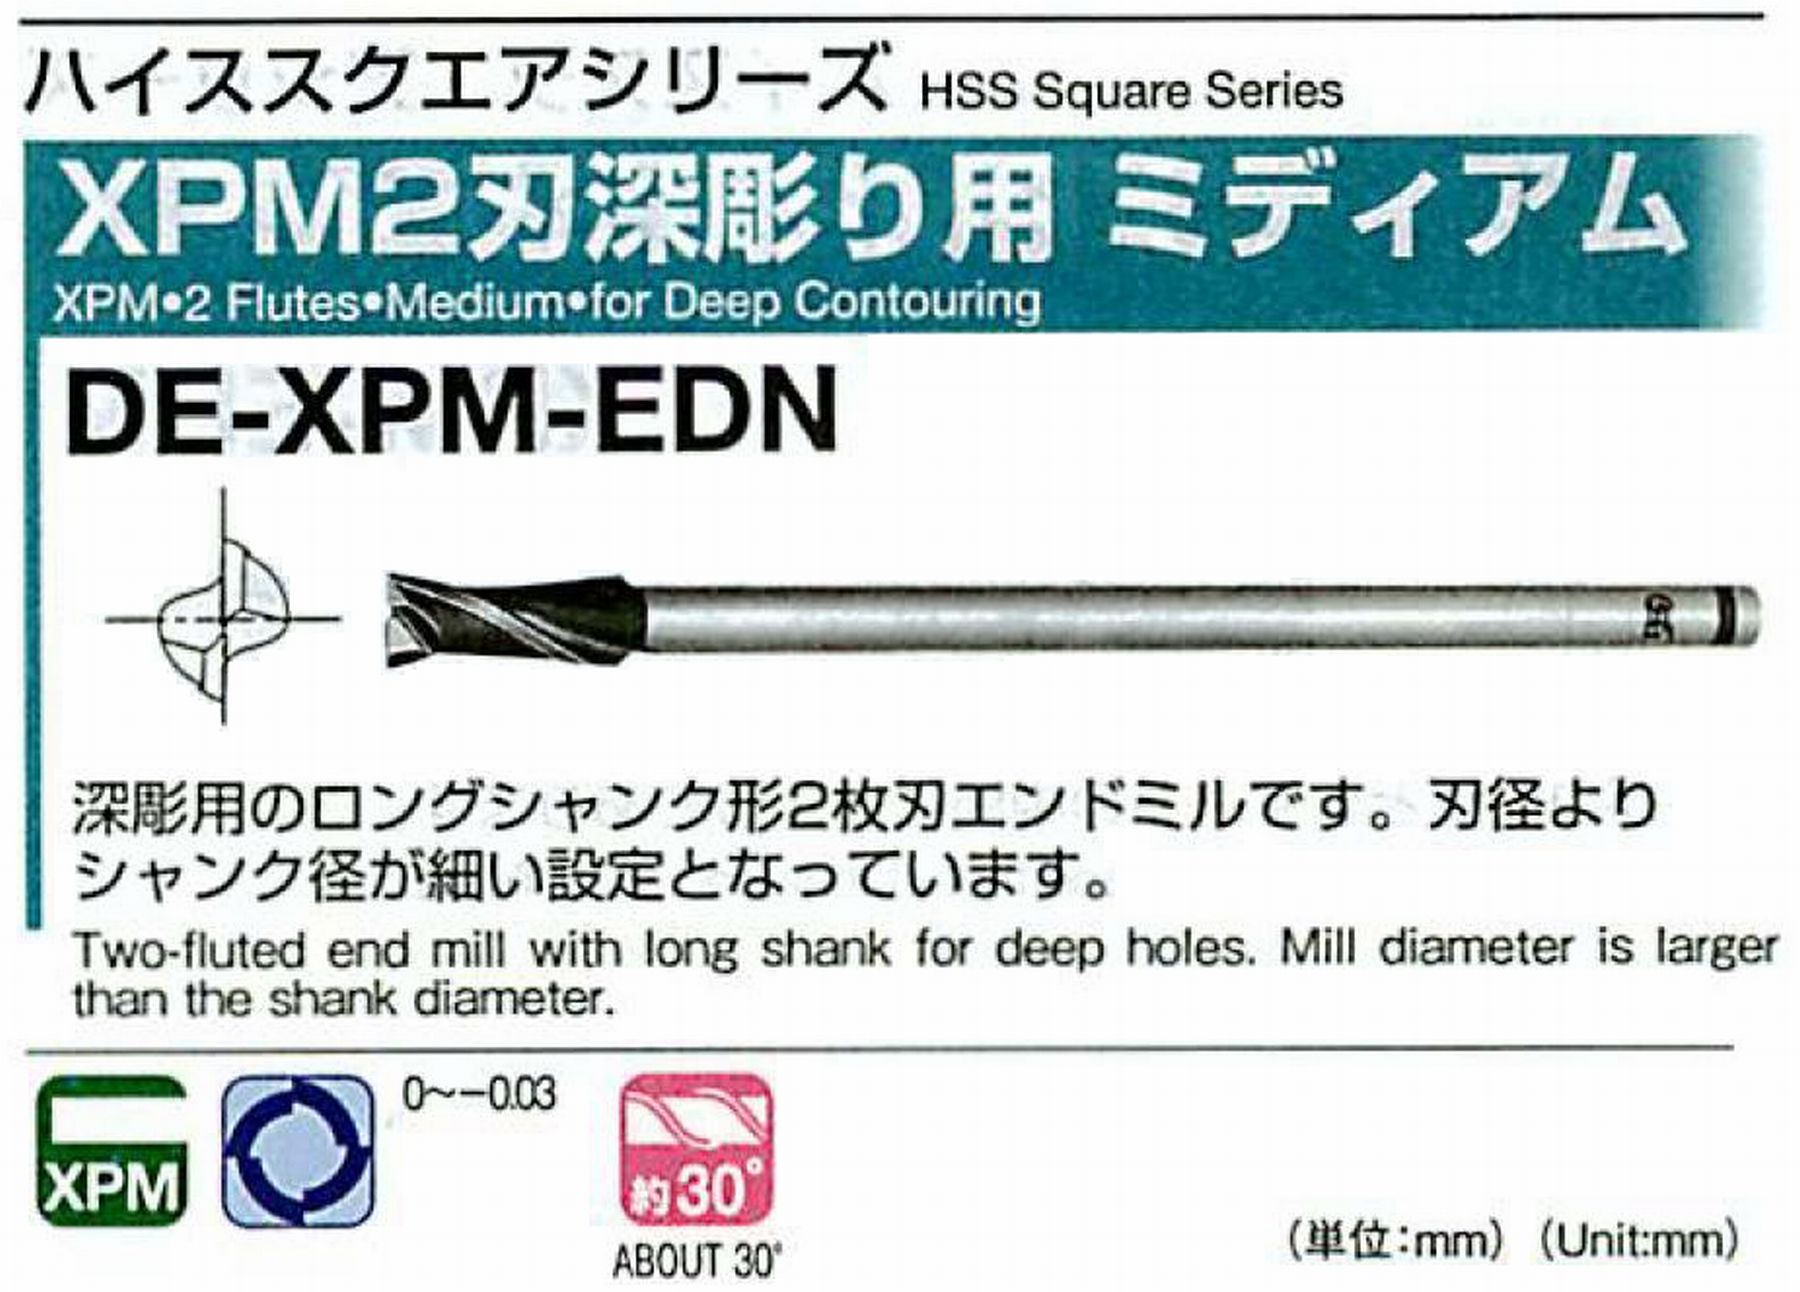 オーエスジー/OSG XPM2刃深彫り用 ミディアム DE-XPM-EDN 外径34 全長250 刃長60 シャンク径32mm